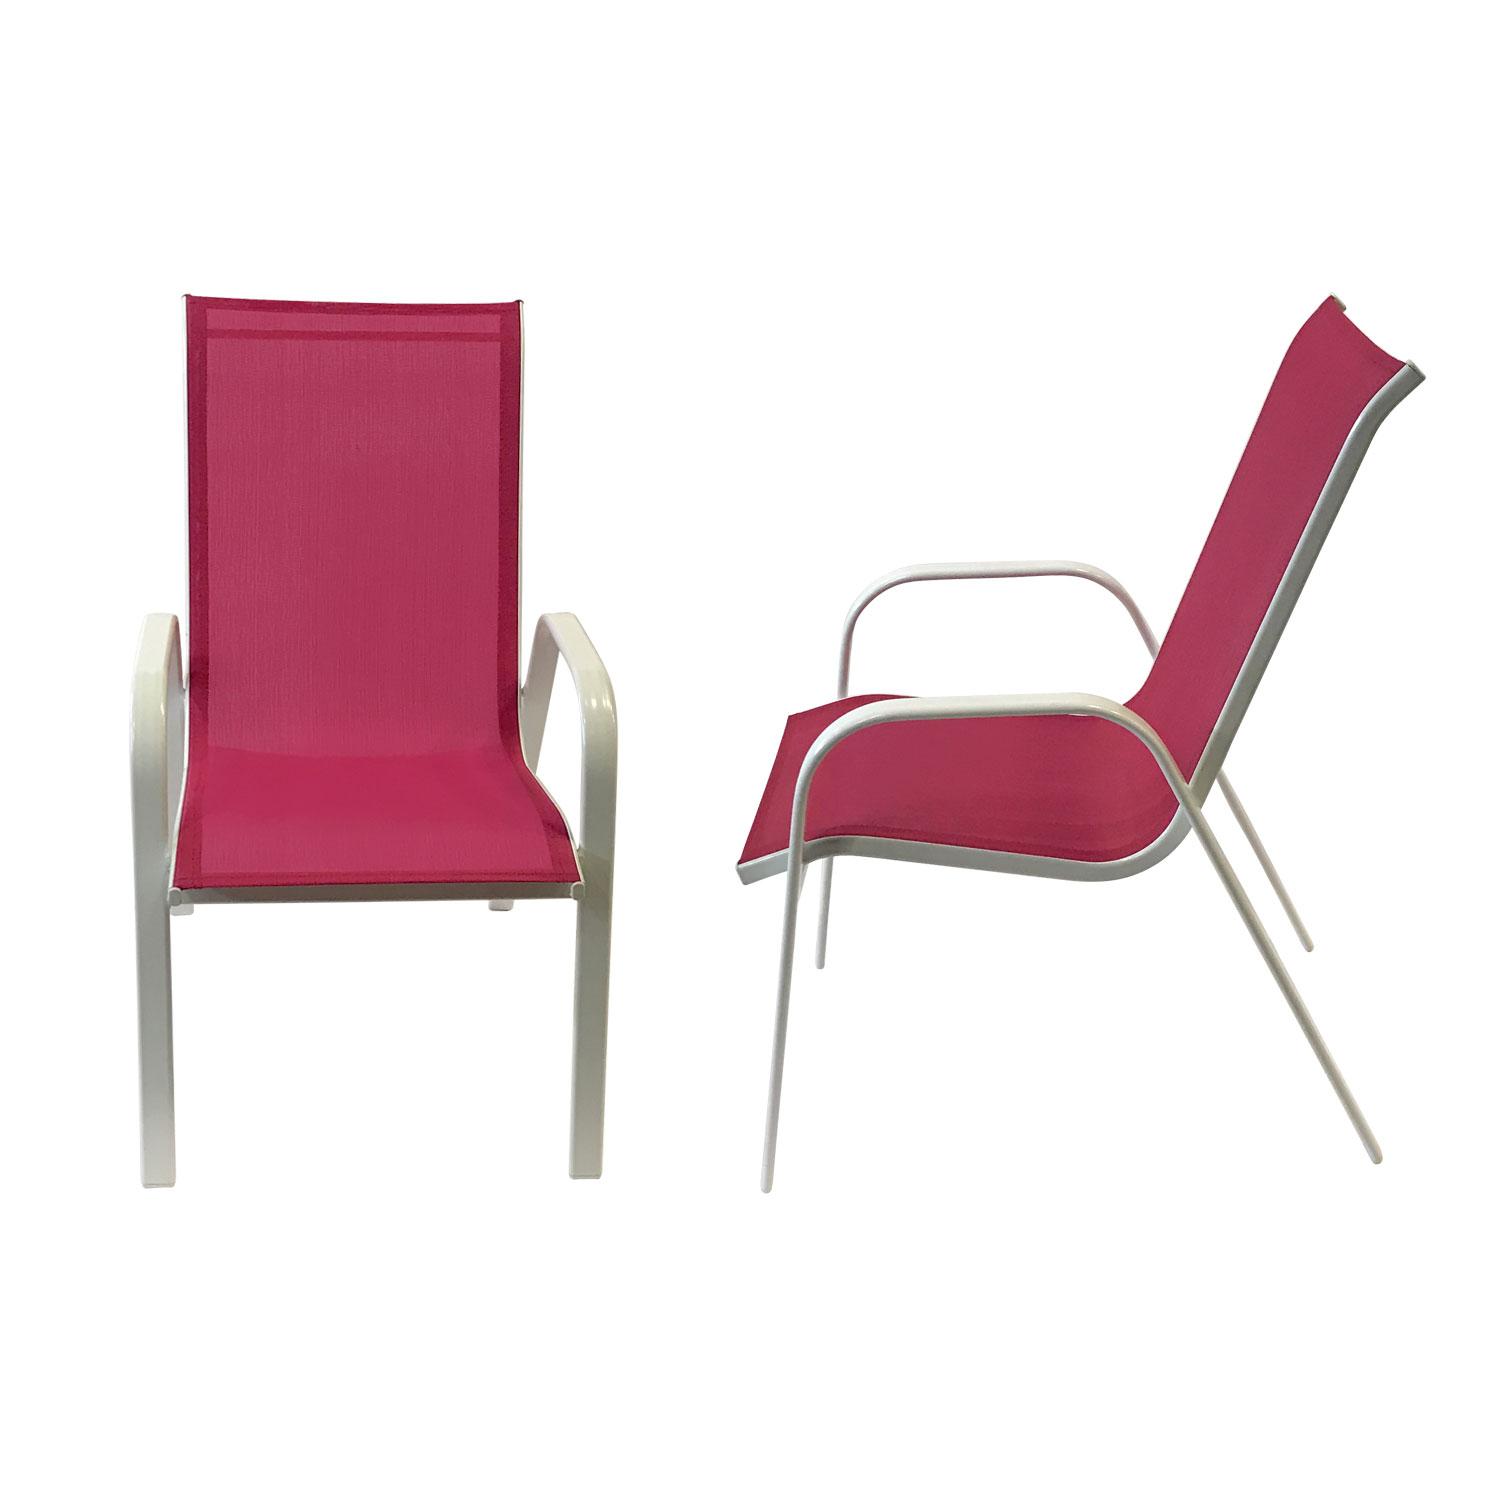 Lote de 4 sillas MARBELLA en textileno rosa - aluminio blanco